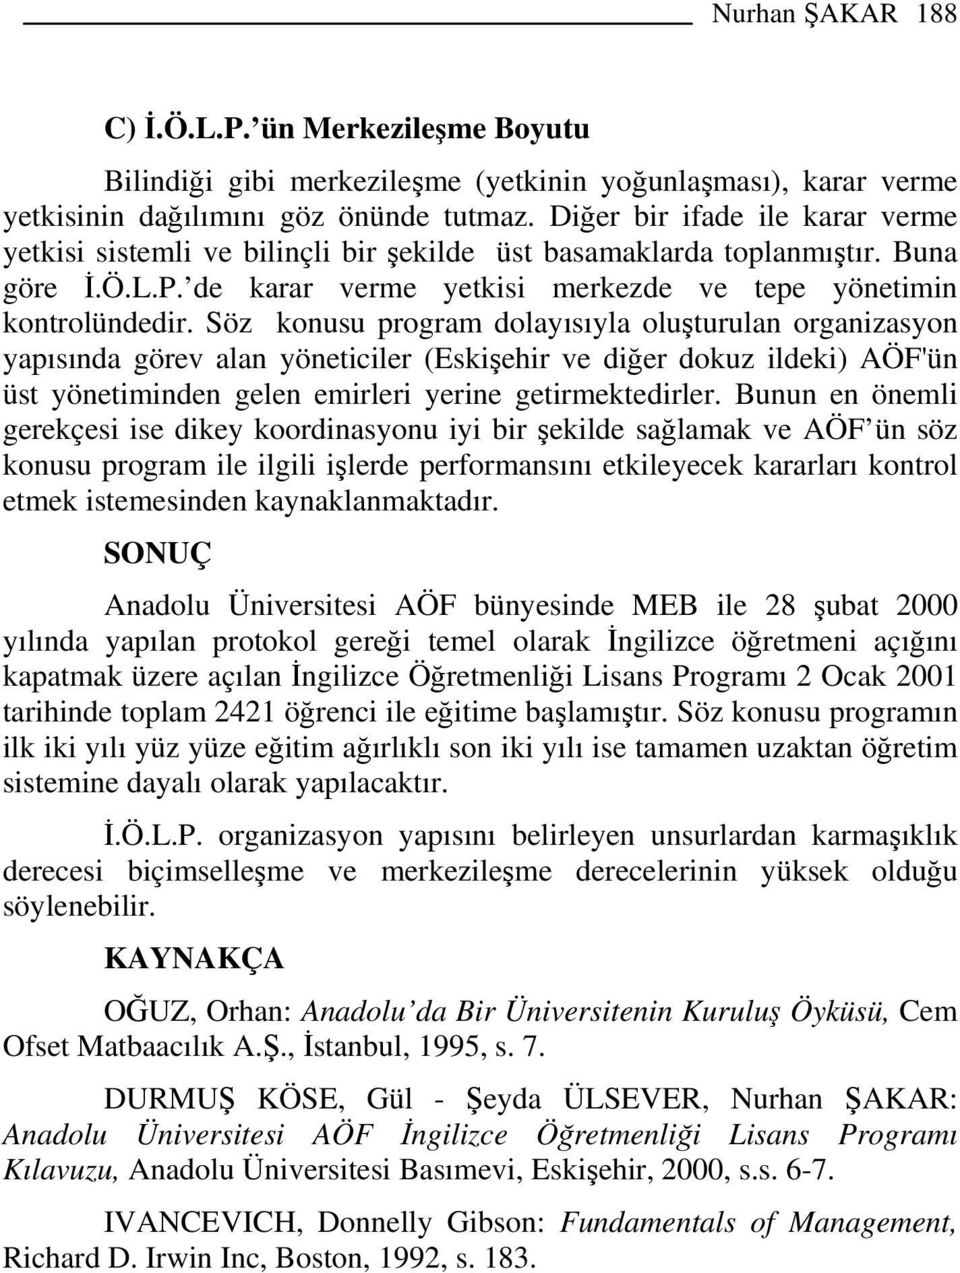 Söz konusu program dolayısıyla oluşturulan organizasyon yapısında görev alan yöneticiler (Eskişehir ve diğer dokuz ildeki) AÖF'ün üst yönetiminden gelen emirleri yerine getirmektedirler.